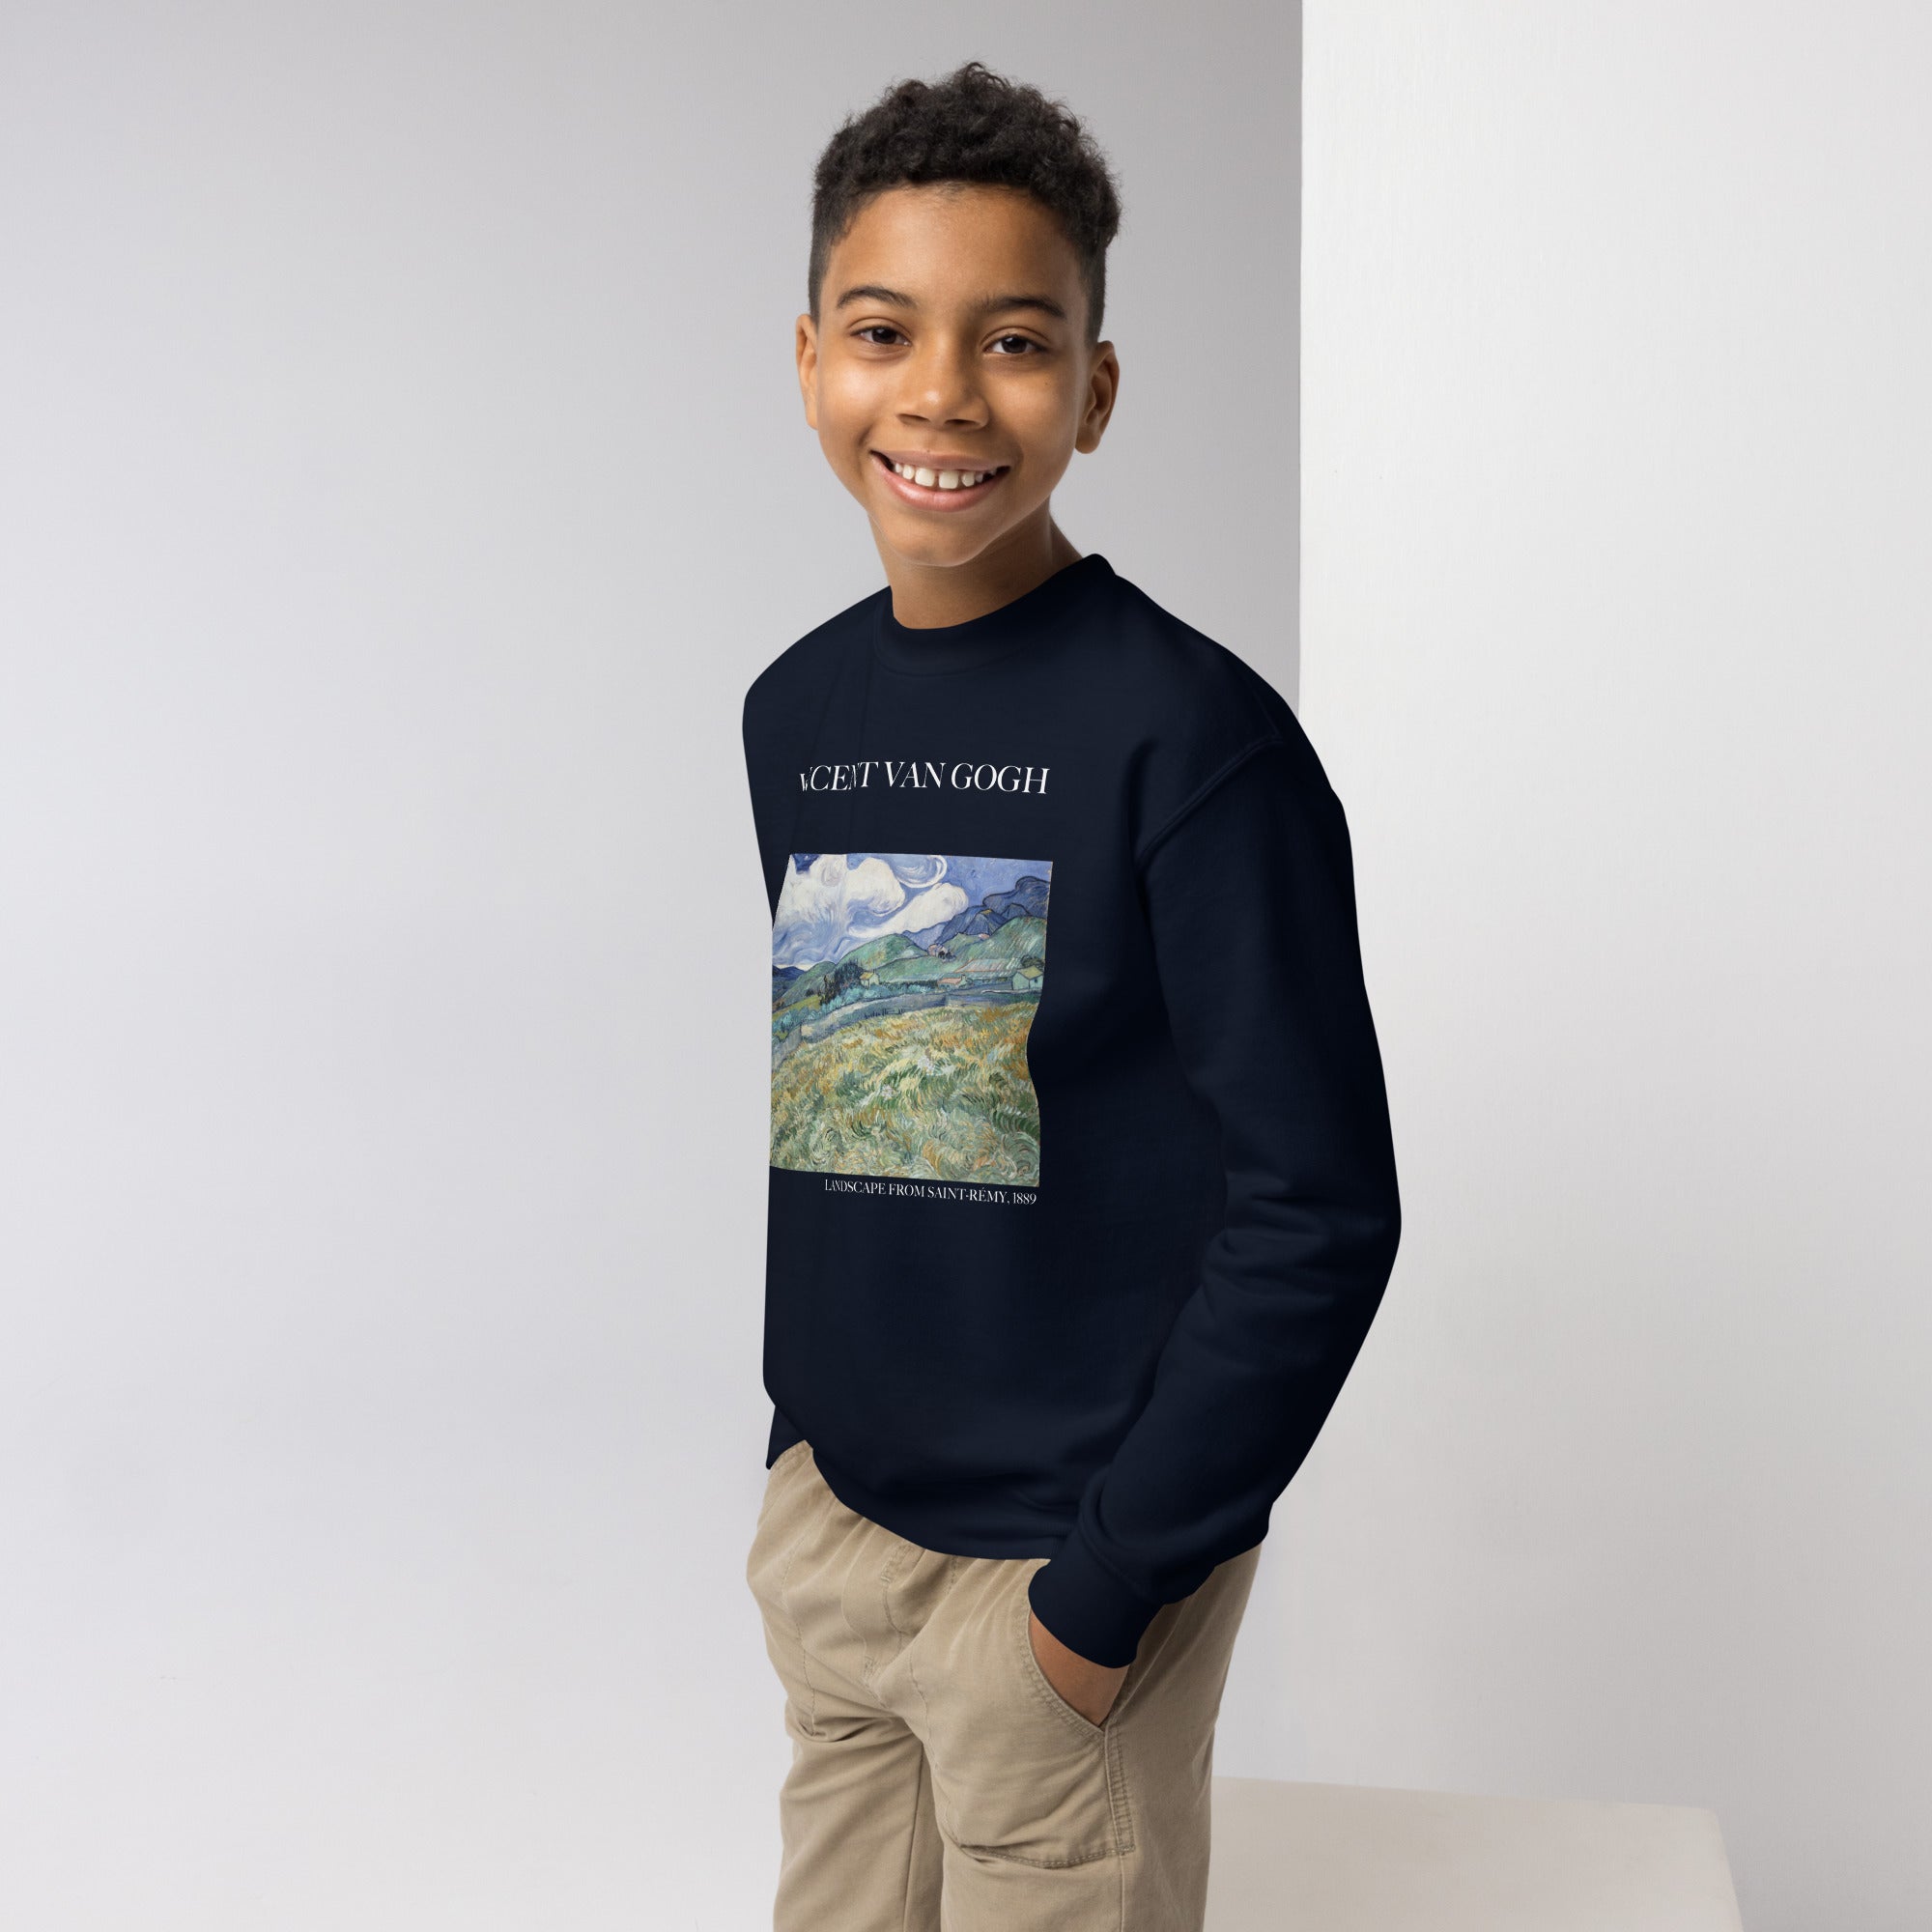 Vincent van Gogh 'Landscape from Saint-Rémy' Famous Painting Crewneck Sweatshirt | Premium Youth Art Sweatshirt